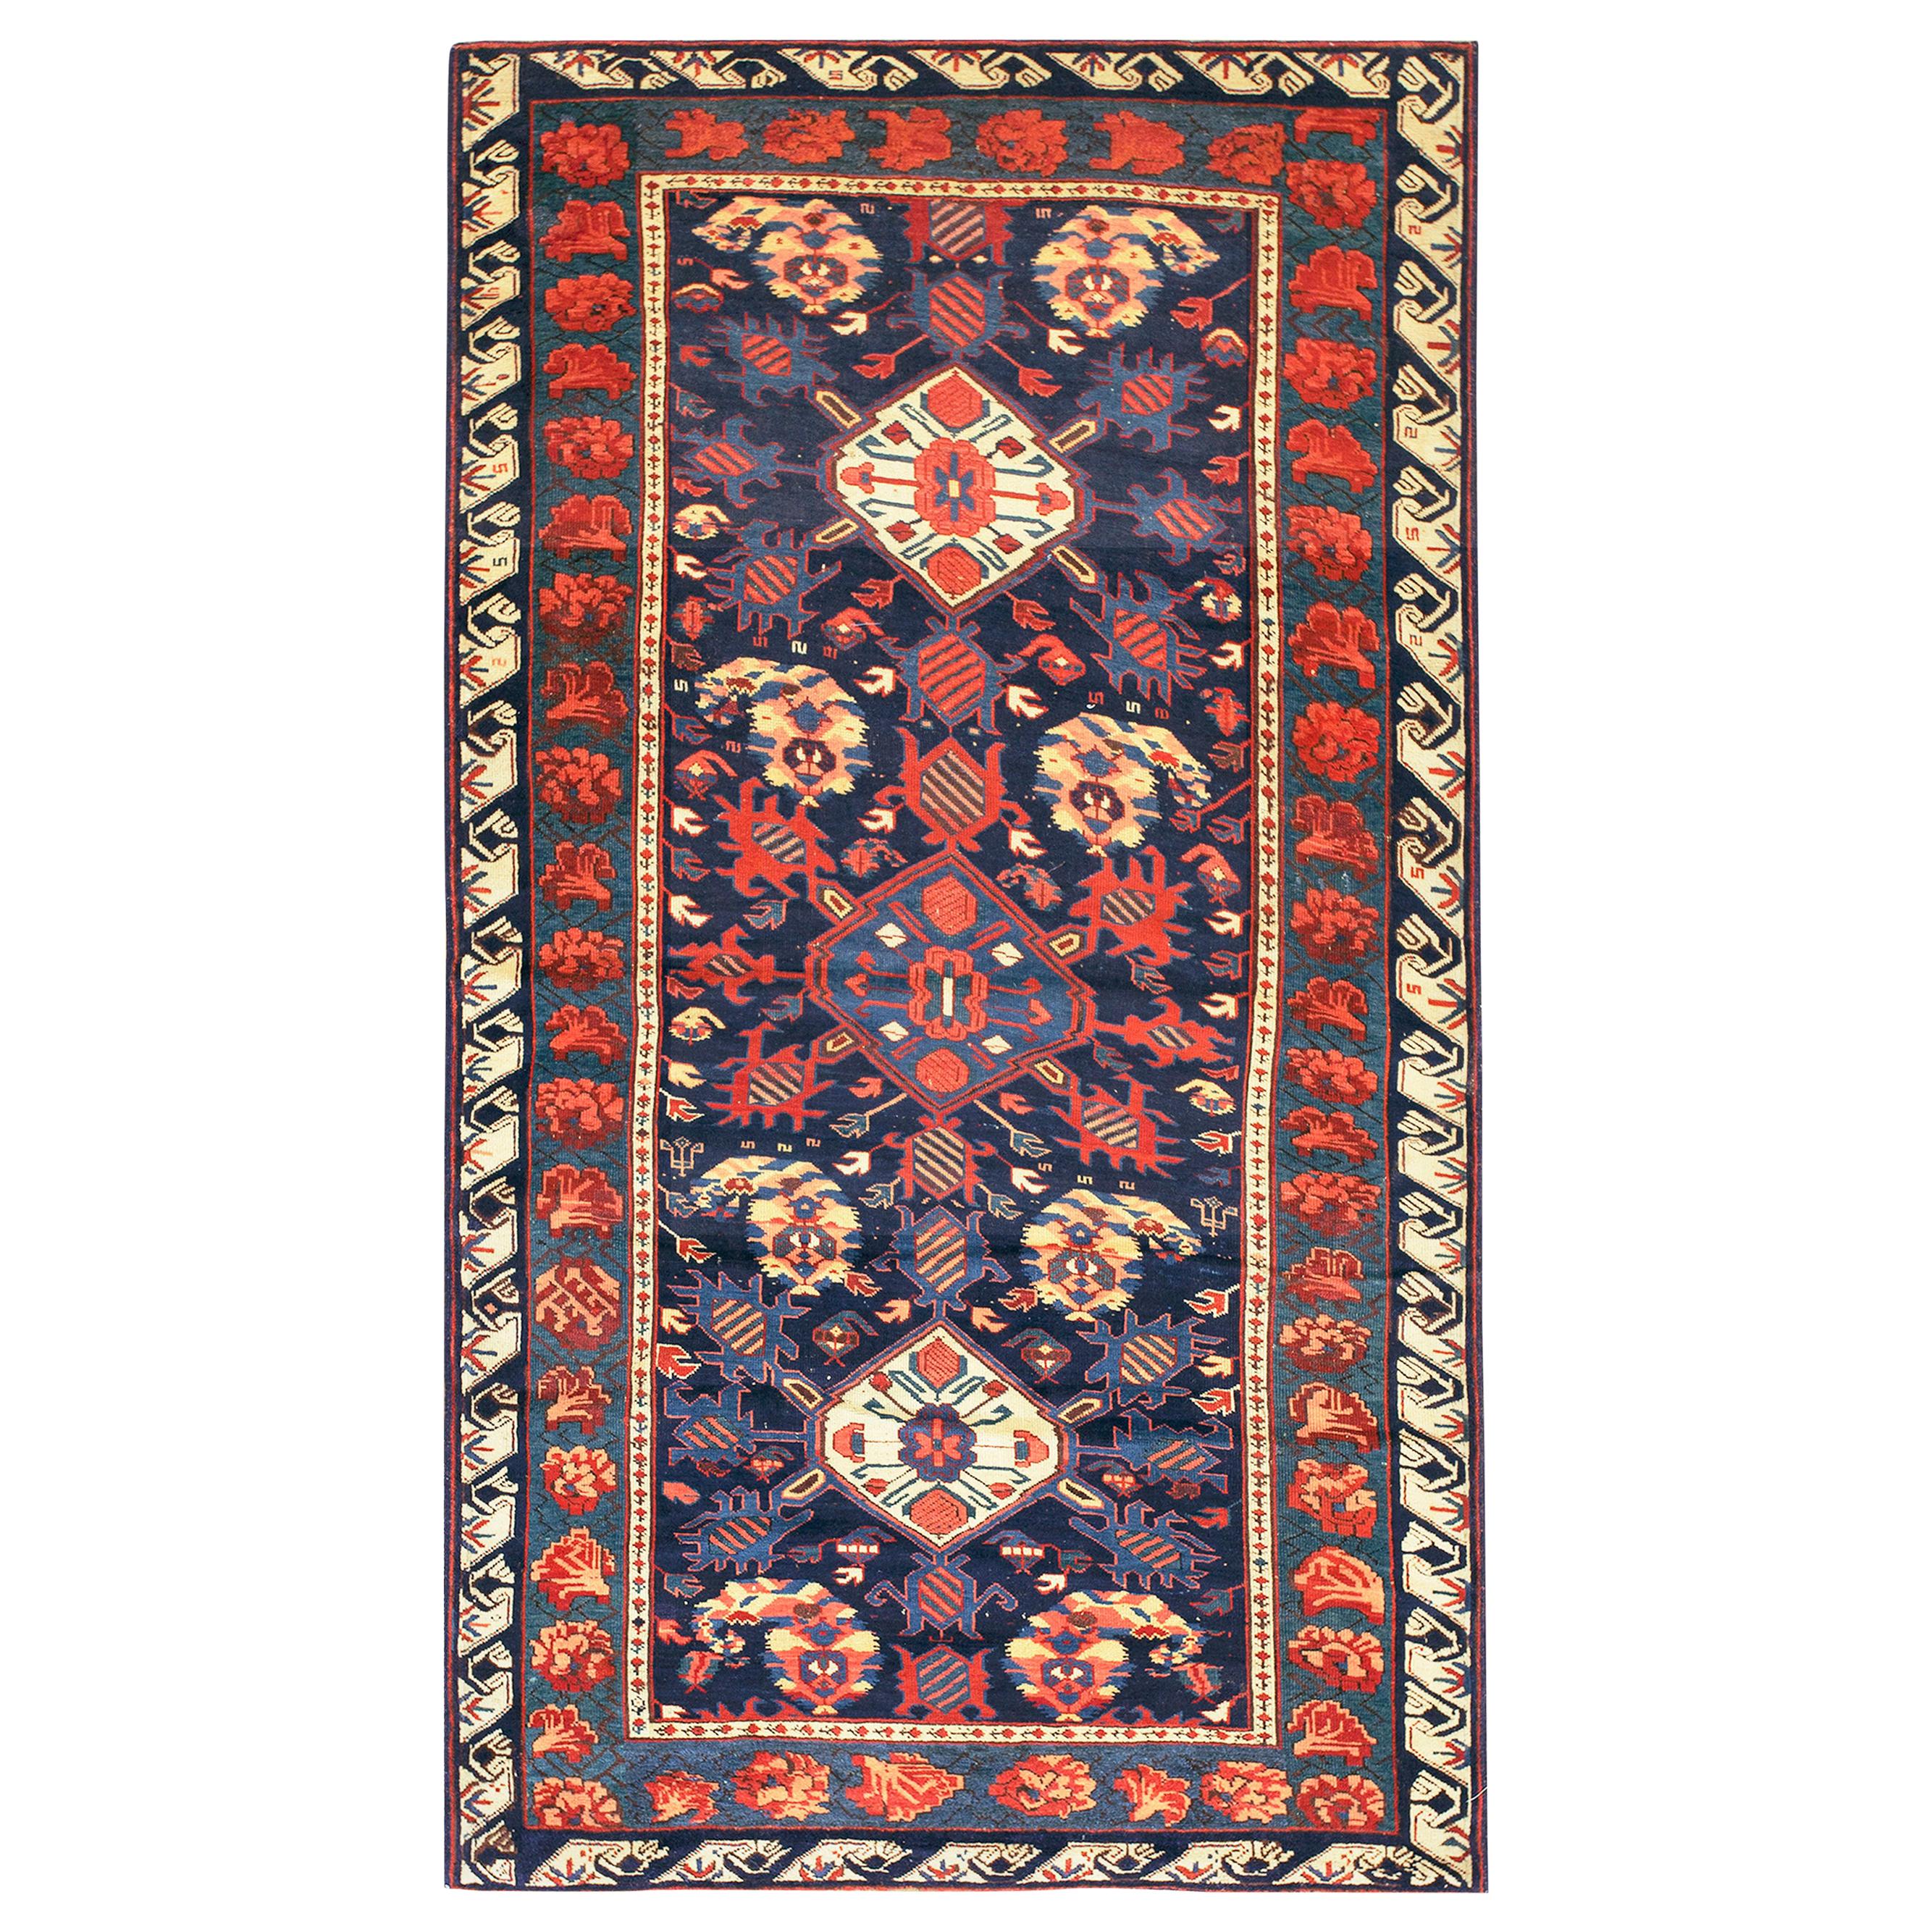 Kaukasischer Zeychor-Teppich des 19. Jahrhunderts ( 4'2" x 7' - 127 x 213 )